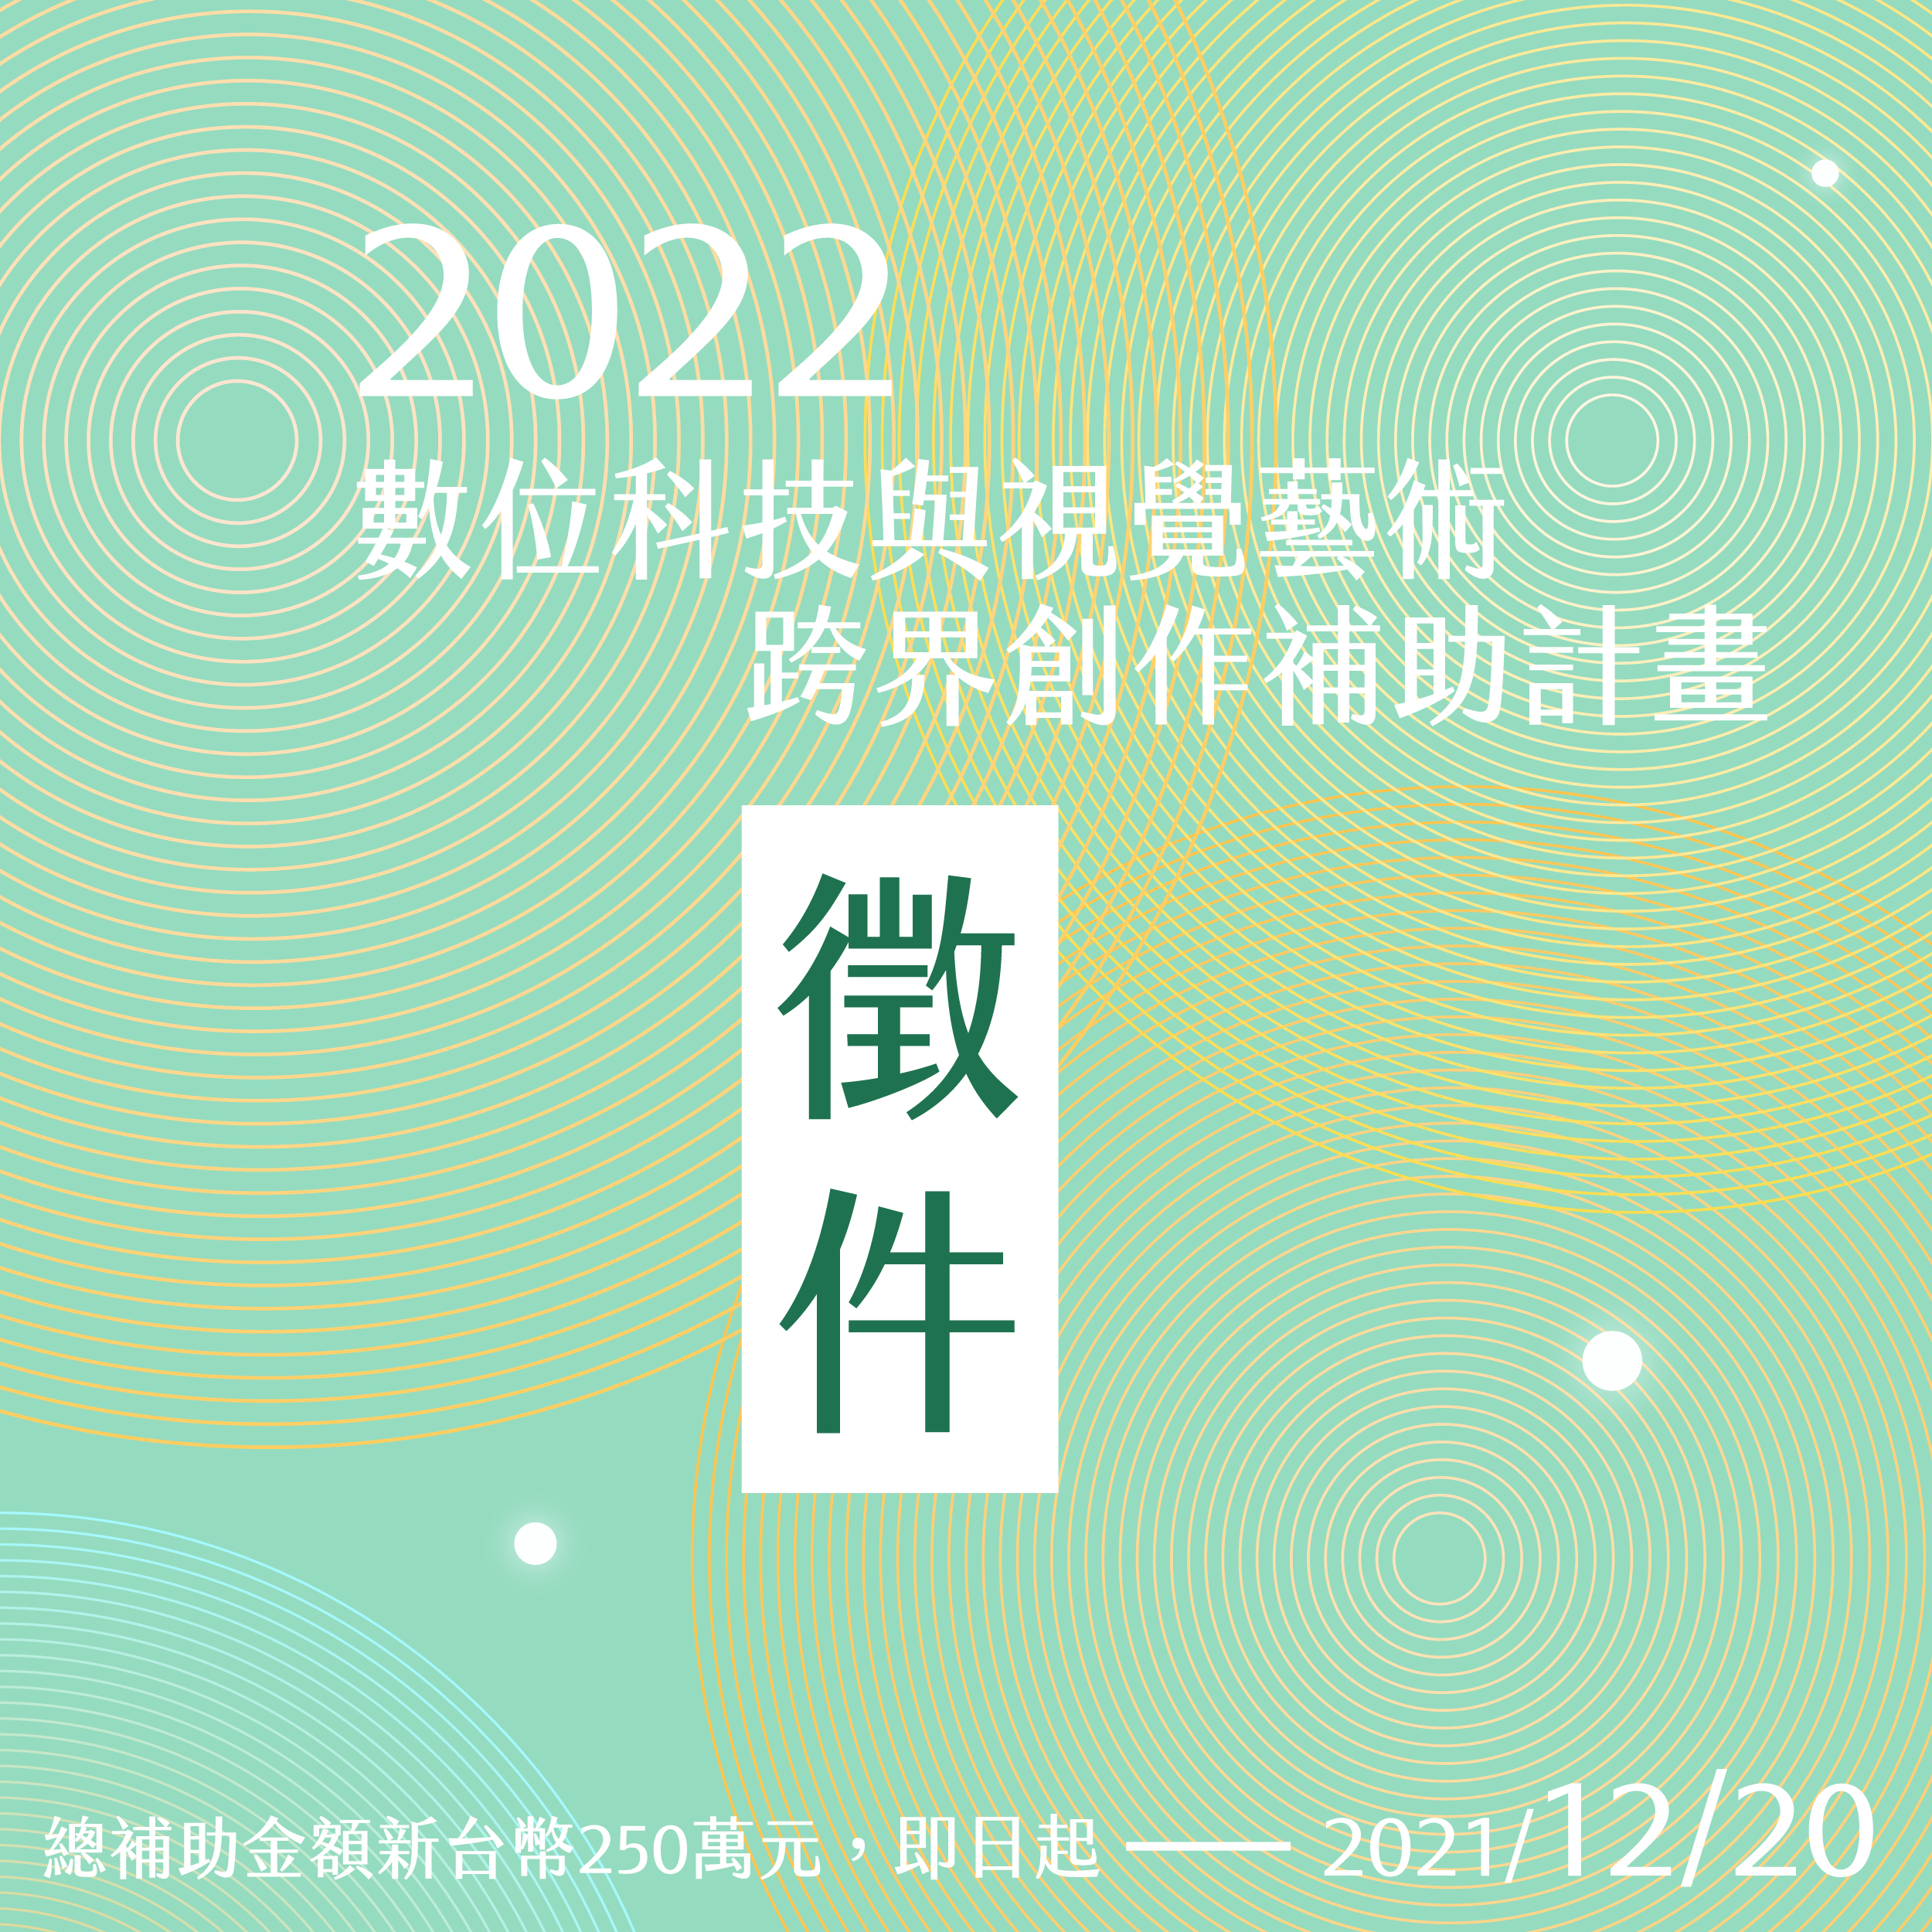 2022年數位科技與視覺藝術跨界創作補助計畫徵件